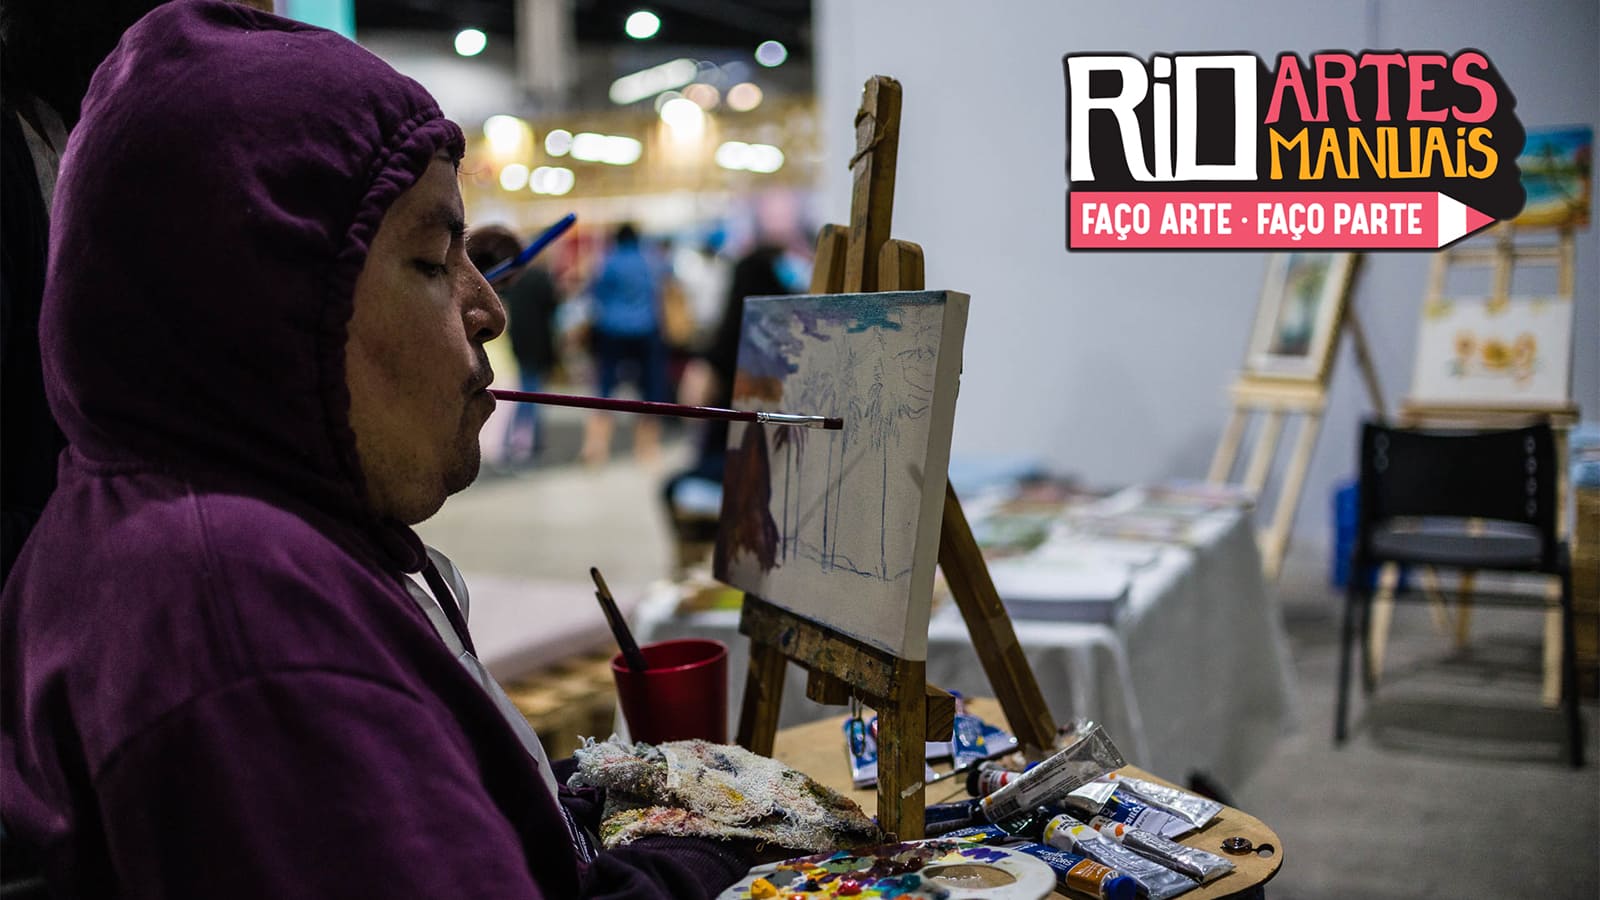 Artista com deficiência pintando quadro com a boca. Sobreposição da logo Rio Artes Manuais 2023 - Faço Arte, Faço Parte.